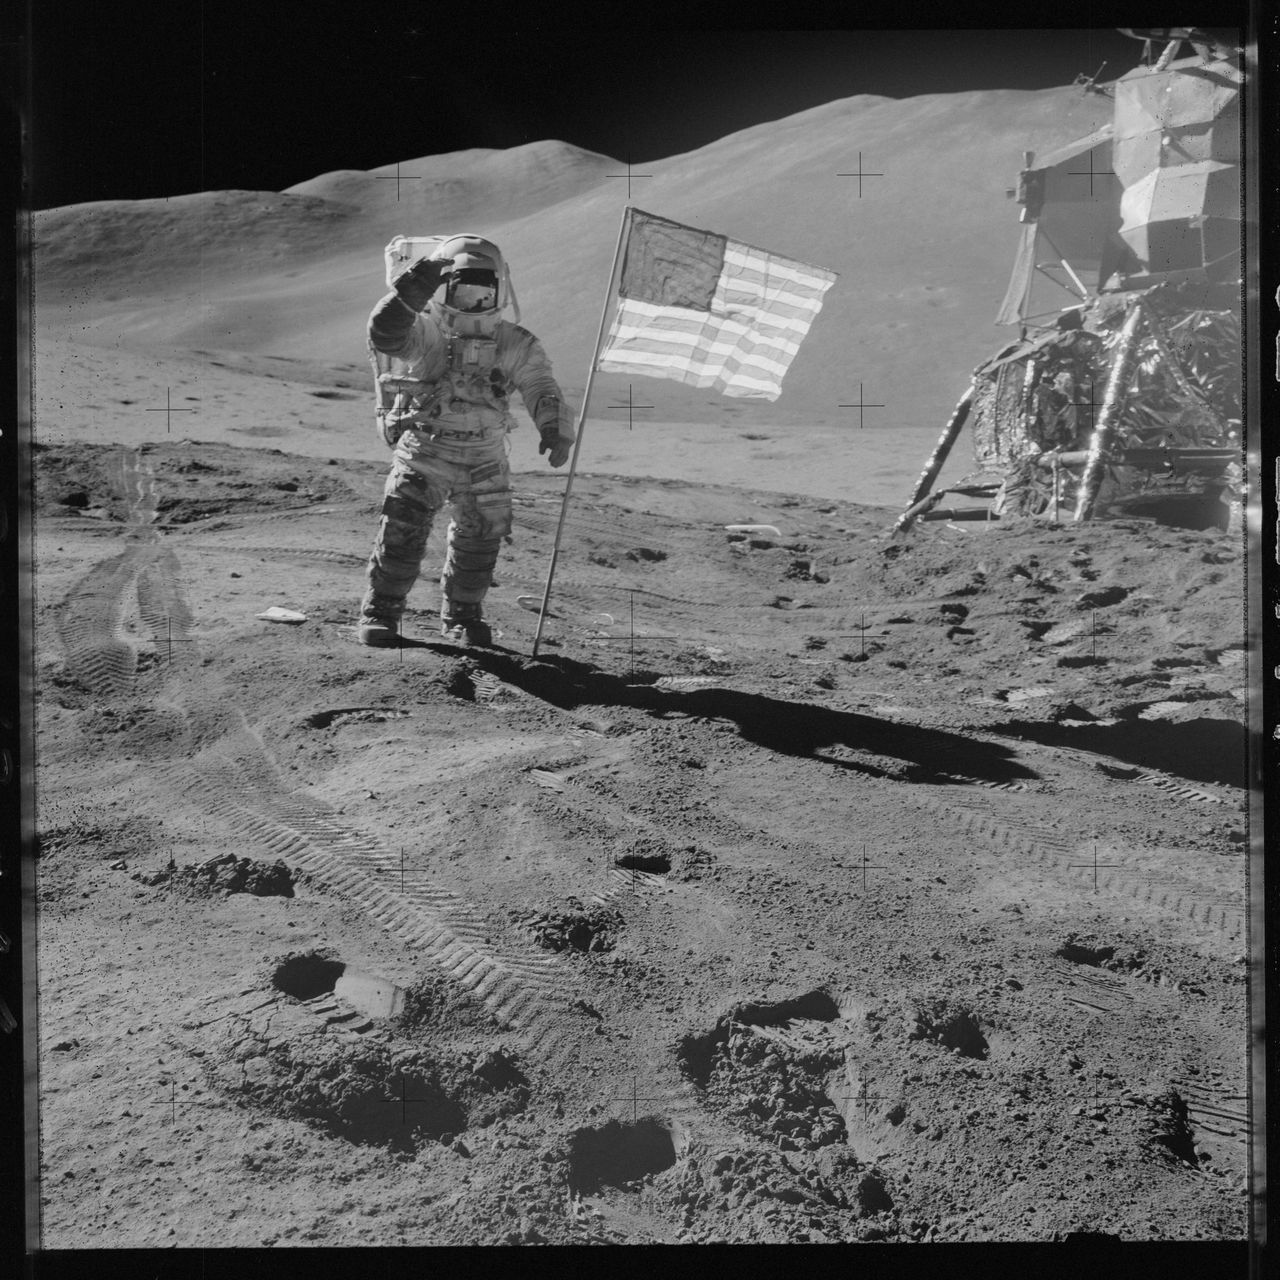 Wybraliśmy kilka ciekawych kadrów, jednak jeżeli macie chwilę, to warto wybrać się na Księżyc z misją Apollo 11.